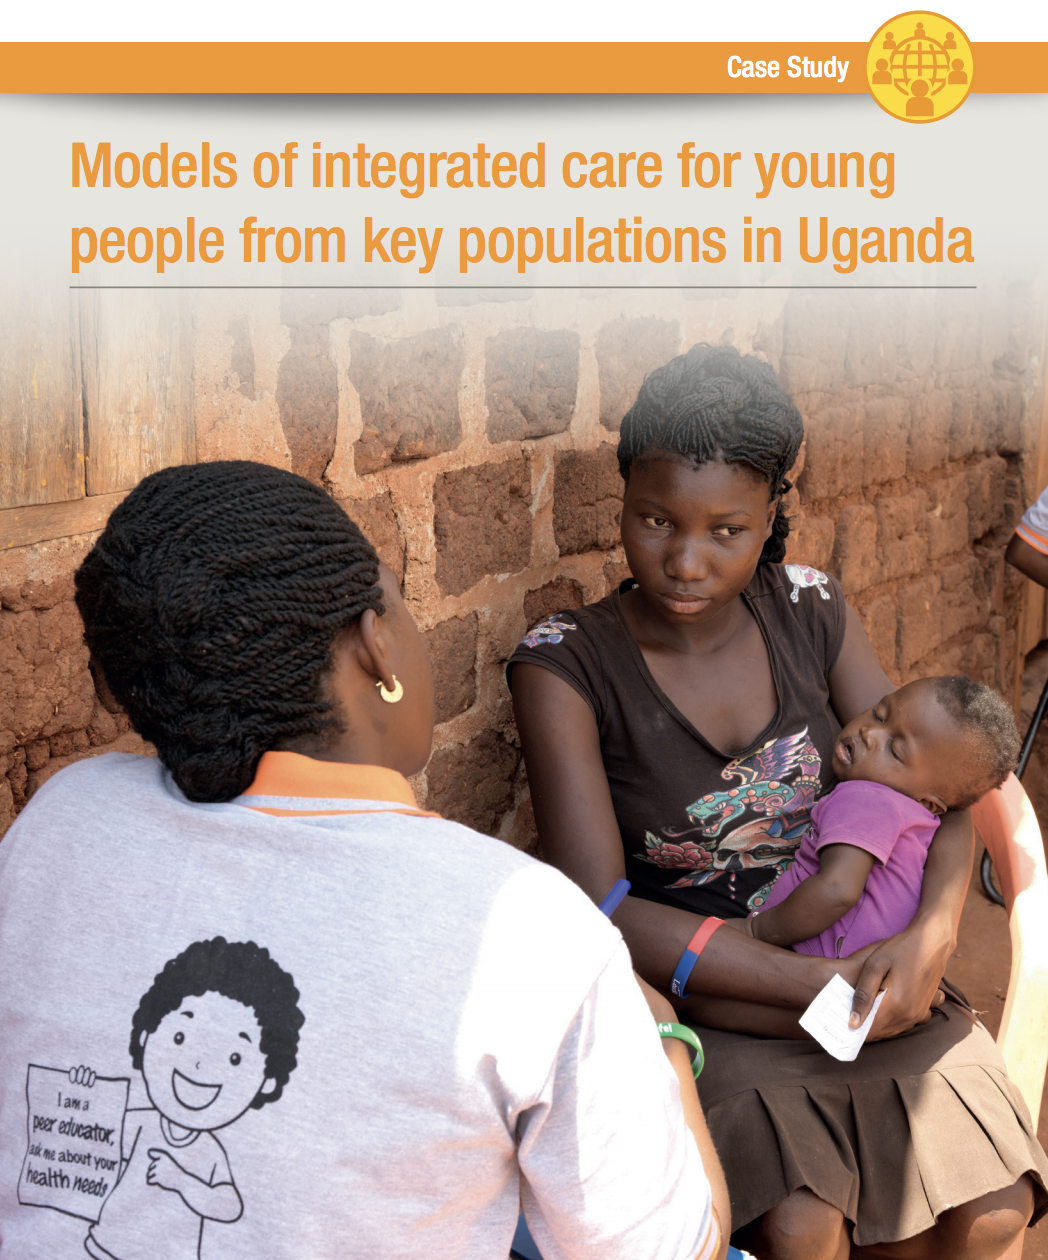 Modèles de soins intégrés pour les jeunes de populations clés en Ouganda